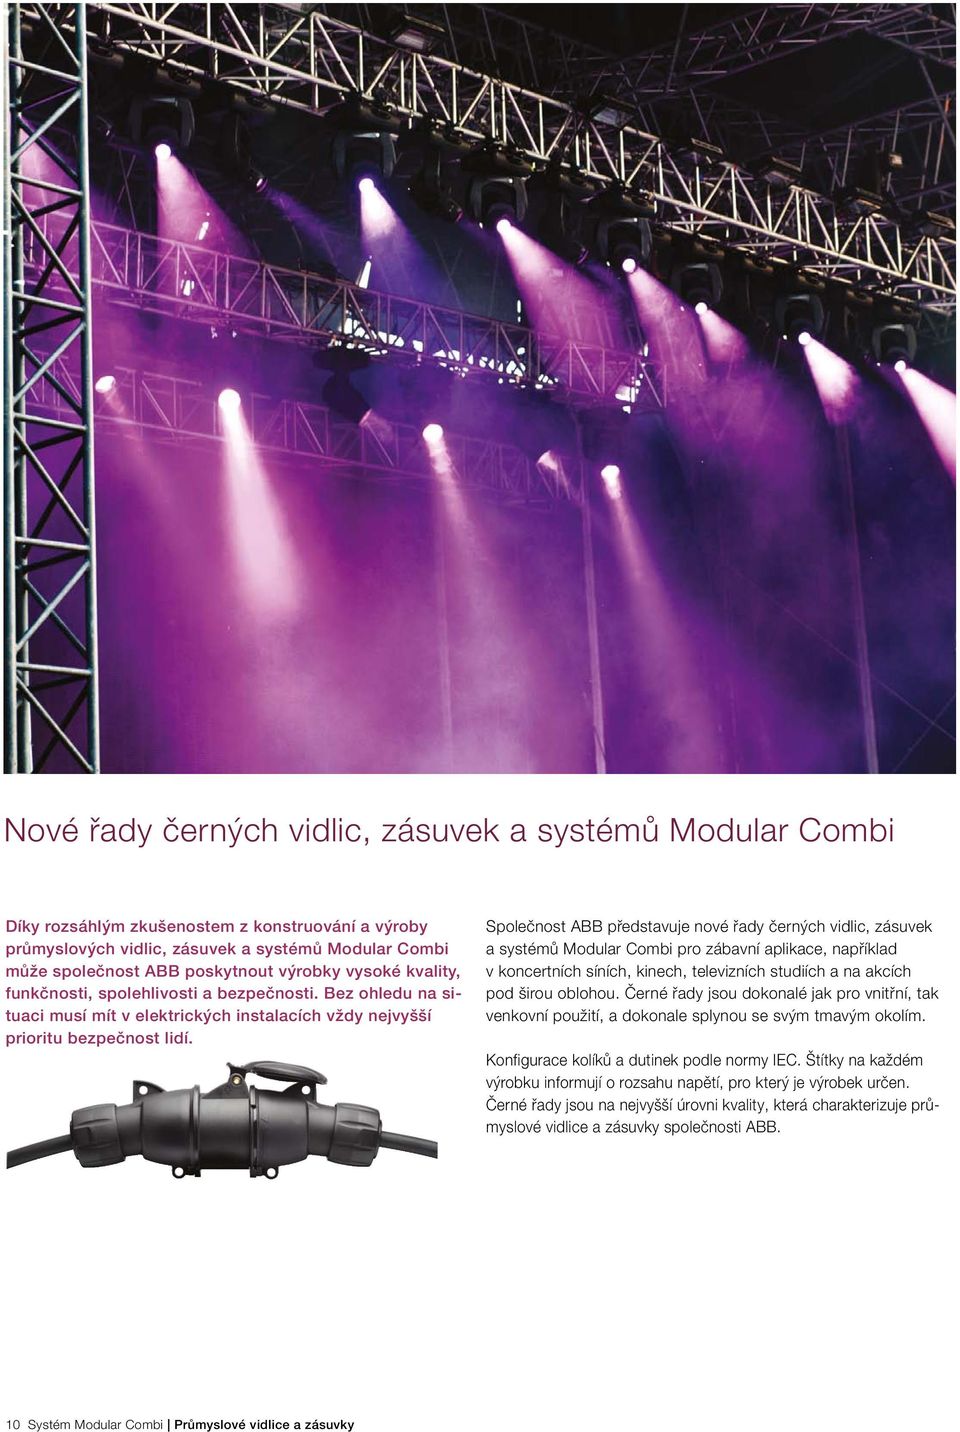 Společnost ABB představuje nové řady černých vidlic, zásuvek a systémů Modular Combi pro zábavní aplikace, například v koncertních síních, kinech, televizních studiích a na akcích pod širou oblohou.